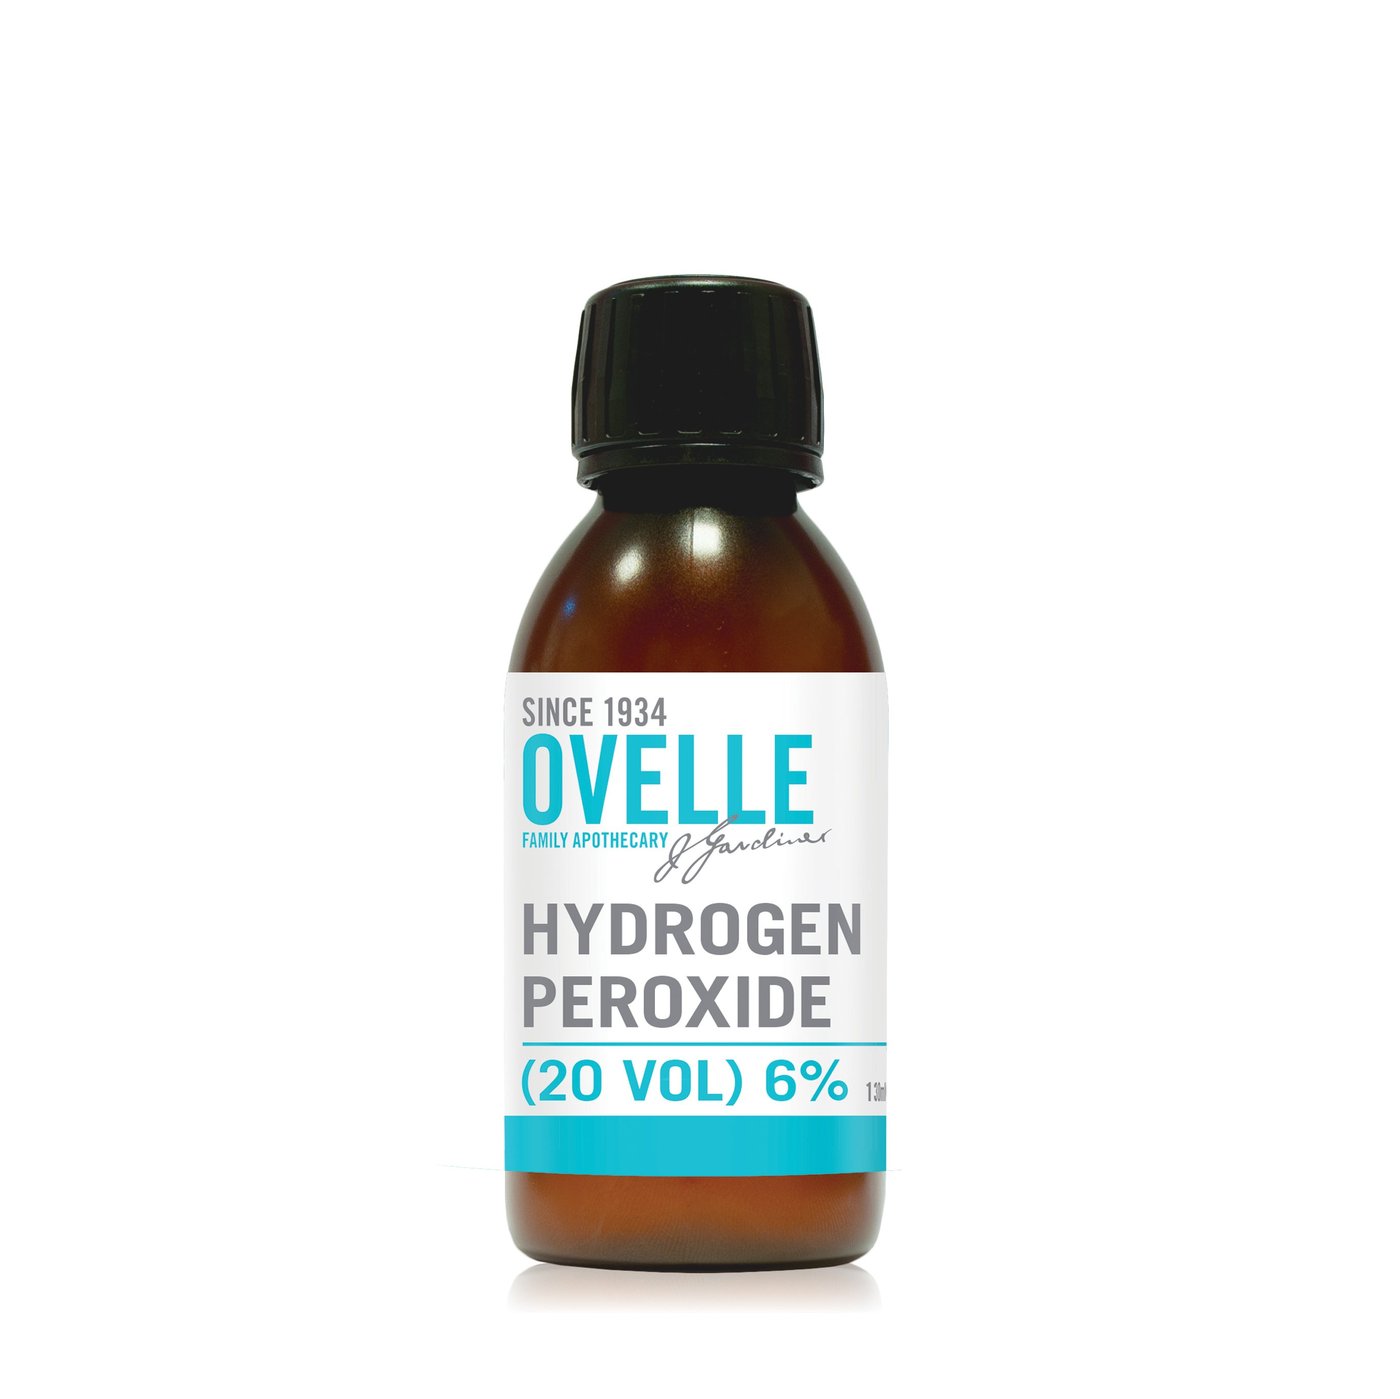 Ovelle Hydrogen Peroxide